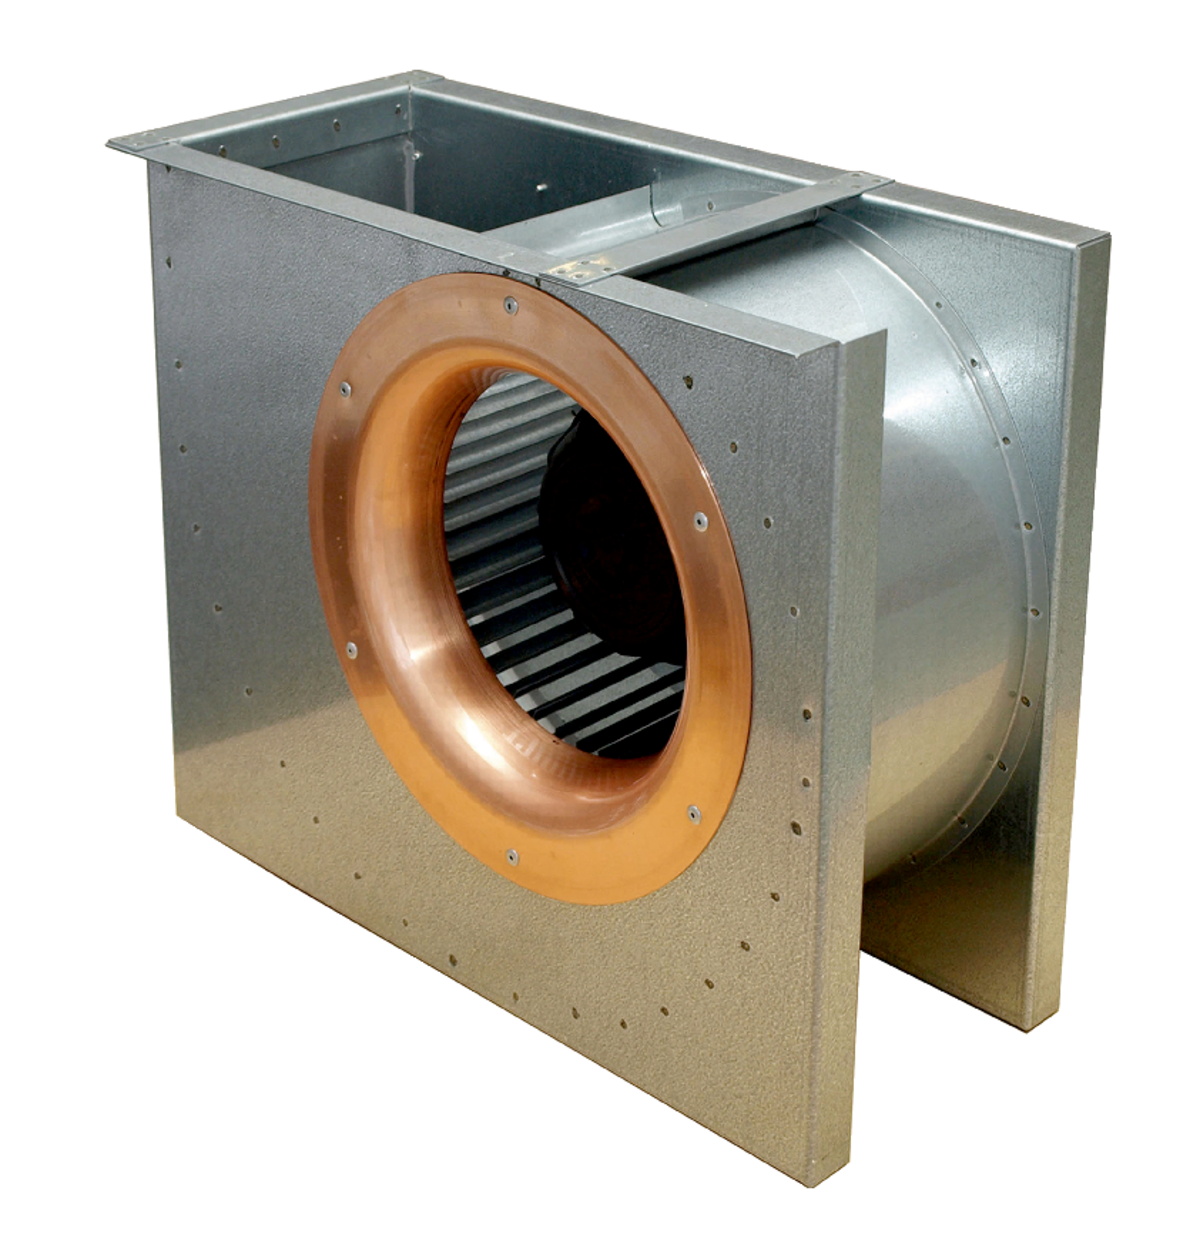 DKEX - Išcentriniai ventiliatoriai - Ventiliatoriai - Produktai - Systemair